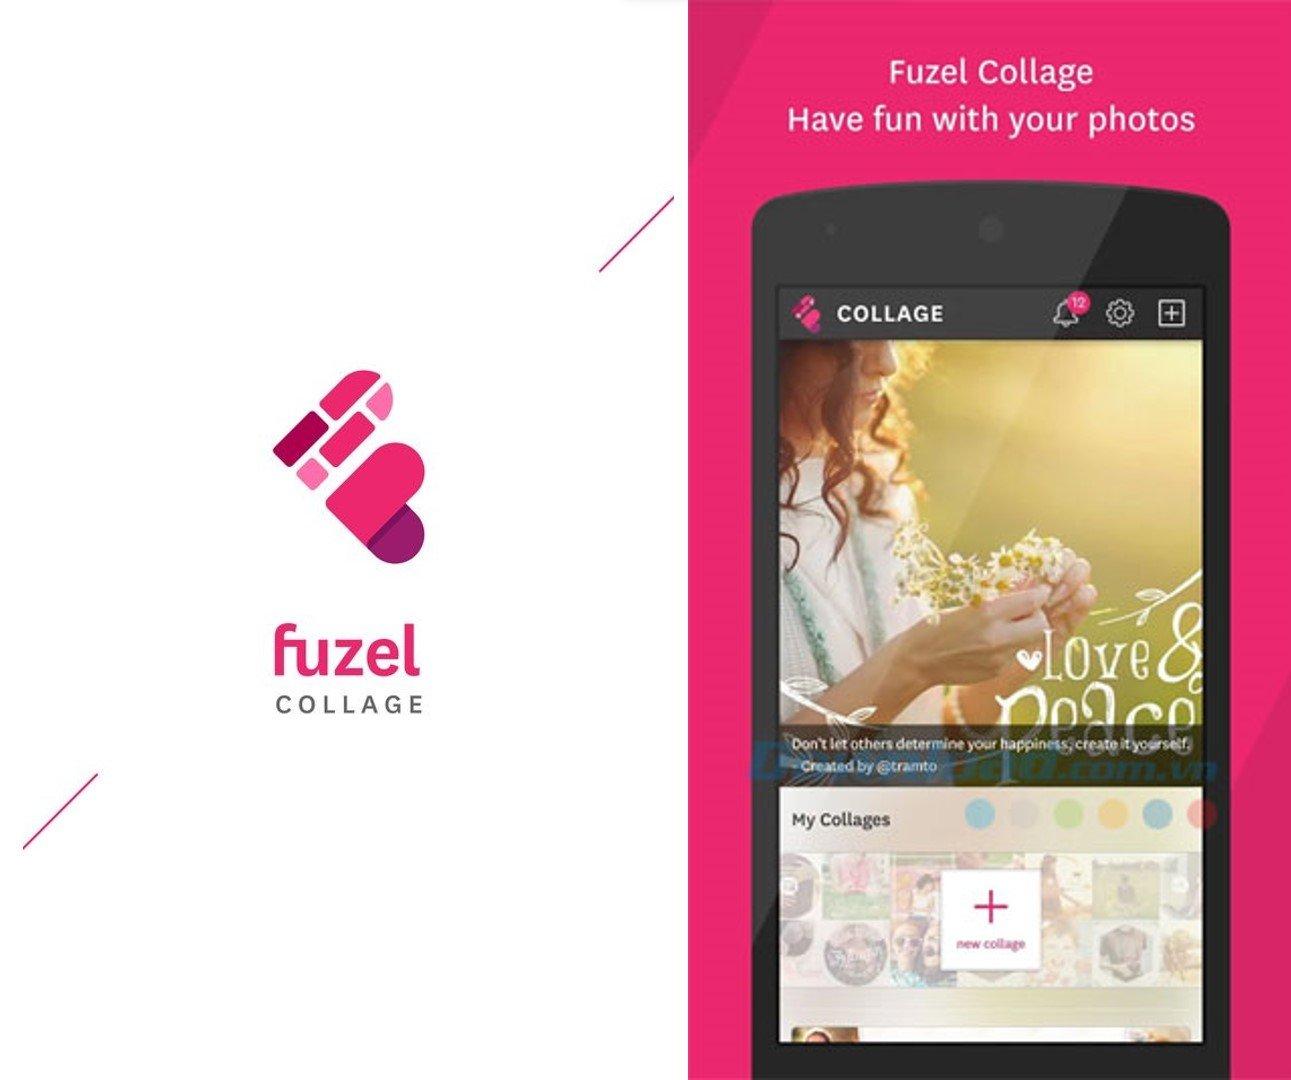 Fuzel Collage thiết kế giao diện đơn giản, dễ dùng